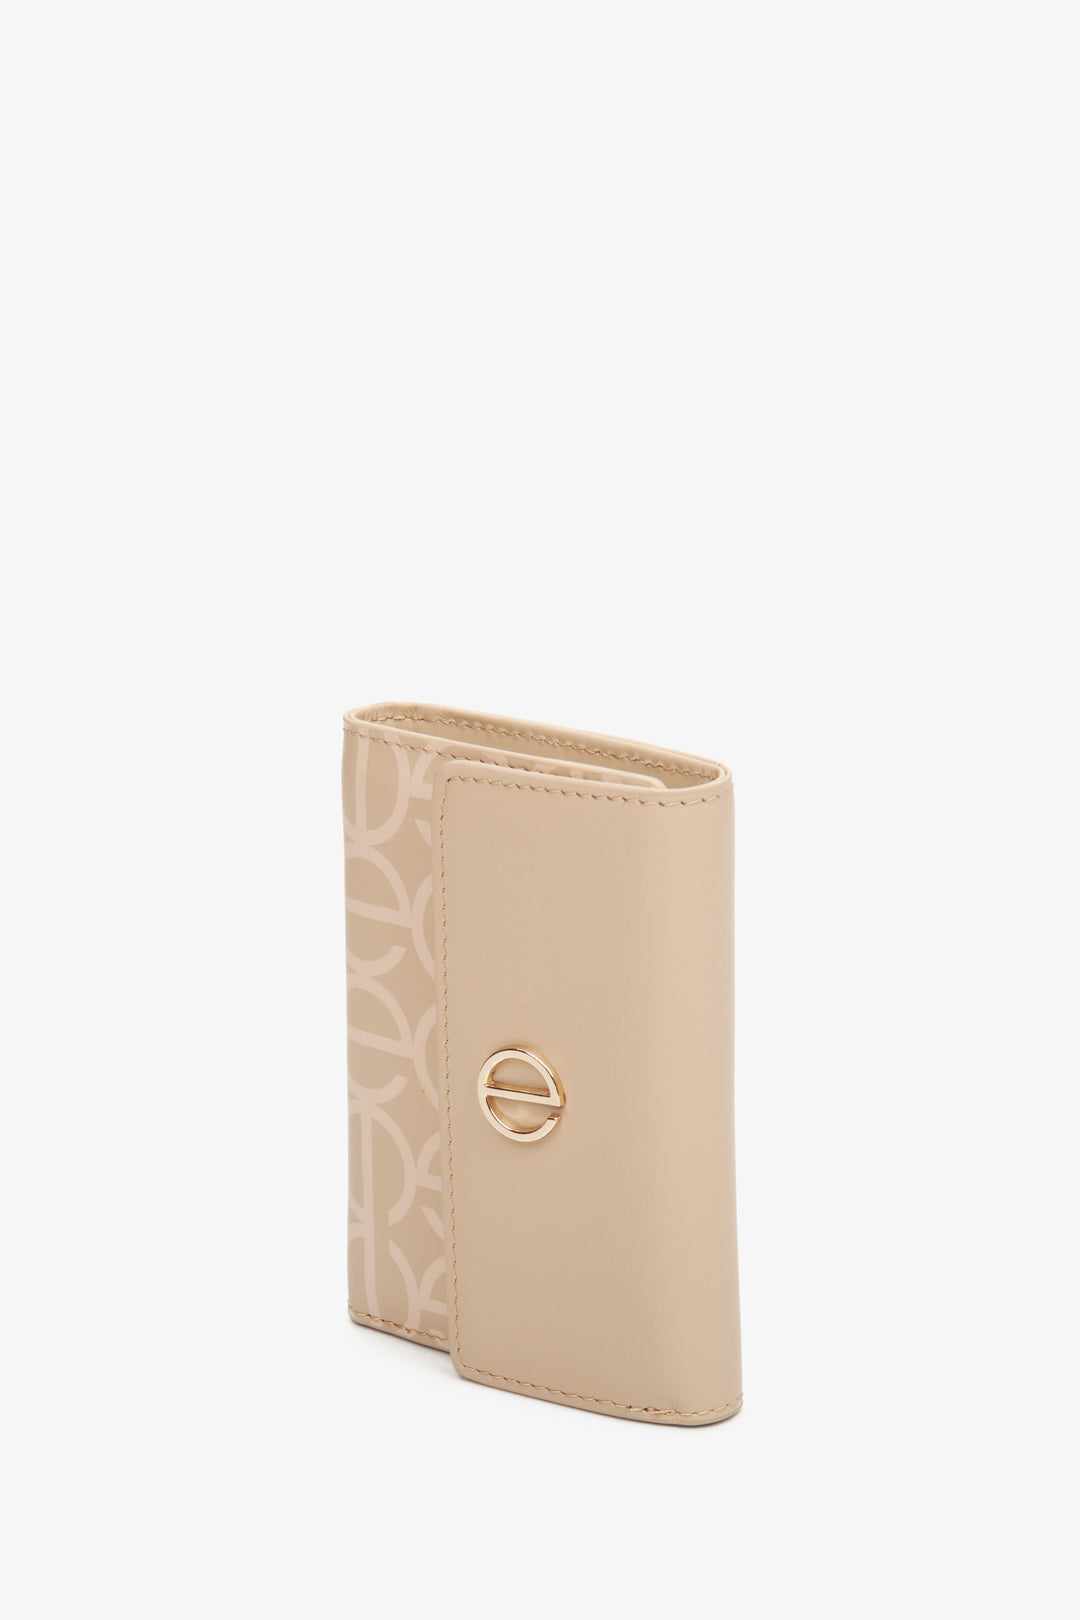 Medium-sized women's beige leather wallet by Estro.